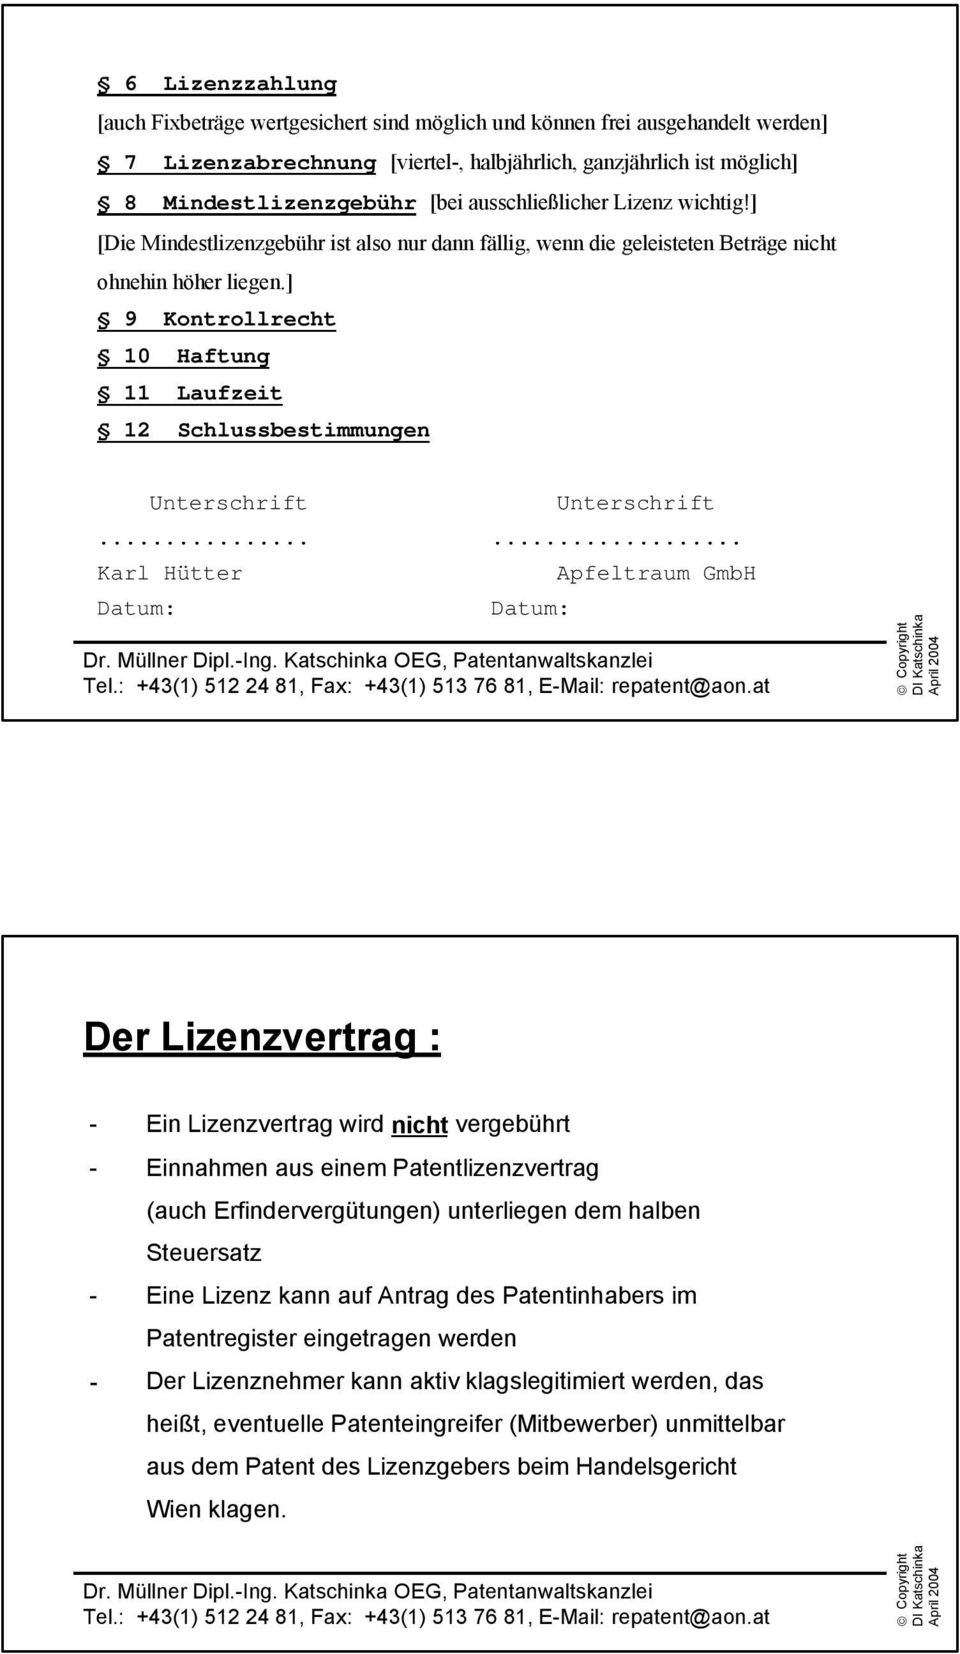 ] 9 Kontrollrecht 10 Haftung 11 Laufzeit 12 Schlussbestimmungen Unterschrift Unterschrift...... Karl Hütter Datum: Datum: Apfeltraum GmbH Dr. Müllner Dipl.-Ing.